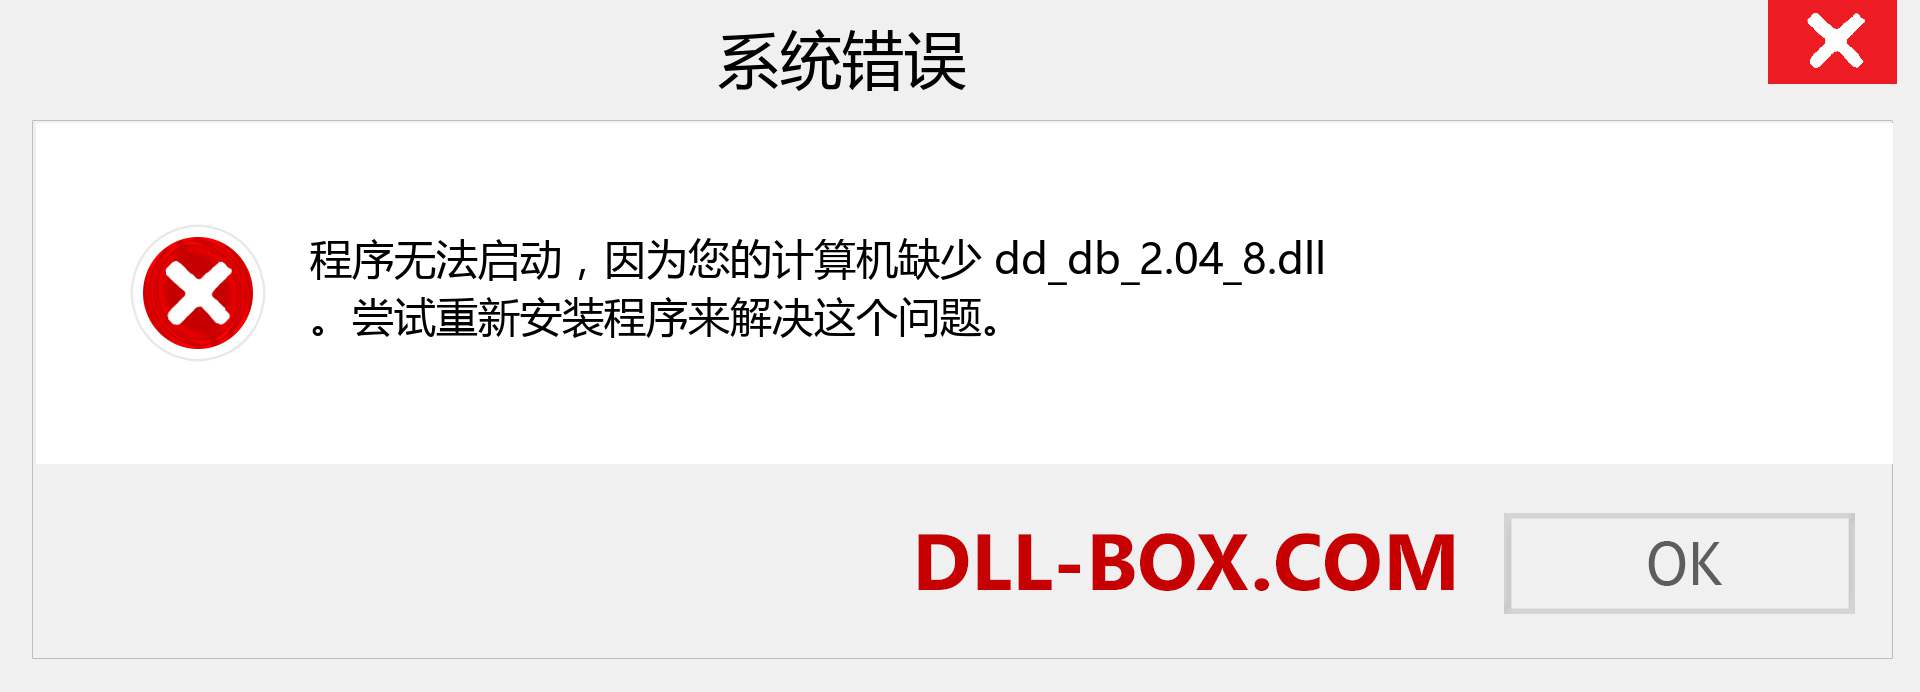 dd_db_2.04_8.dll 文件丢失？。 适用于 Windows 7、8、10 的下载 - 修复 Windows、照片、图像上的 dd_db_2.04_8 dll 丢失错误